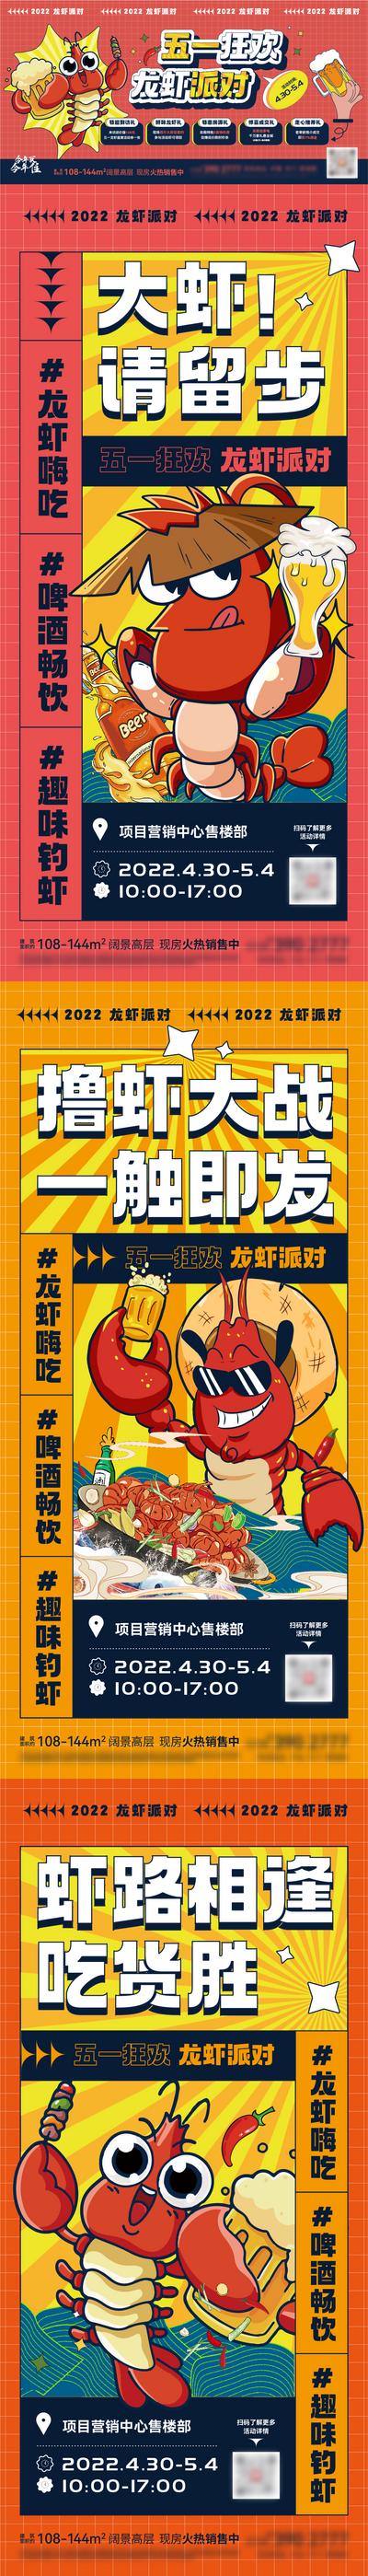 南门网 海报 广告展板 房地产 龙虾节 活动 宣传 插画 经典 小龙虾